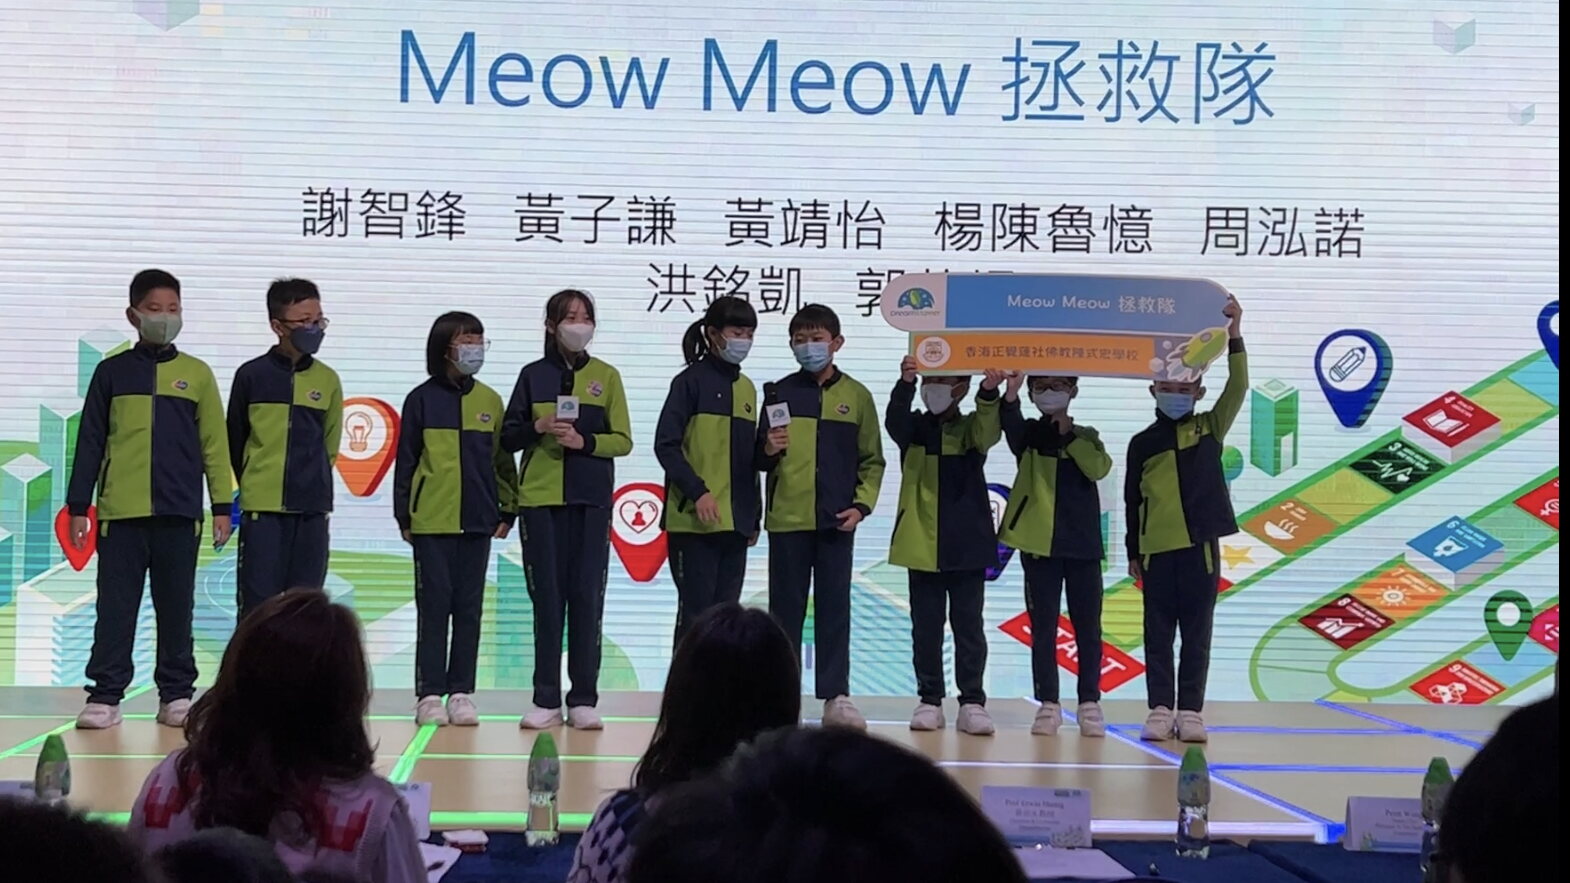 Meow Meow 拯救隊